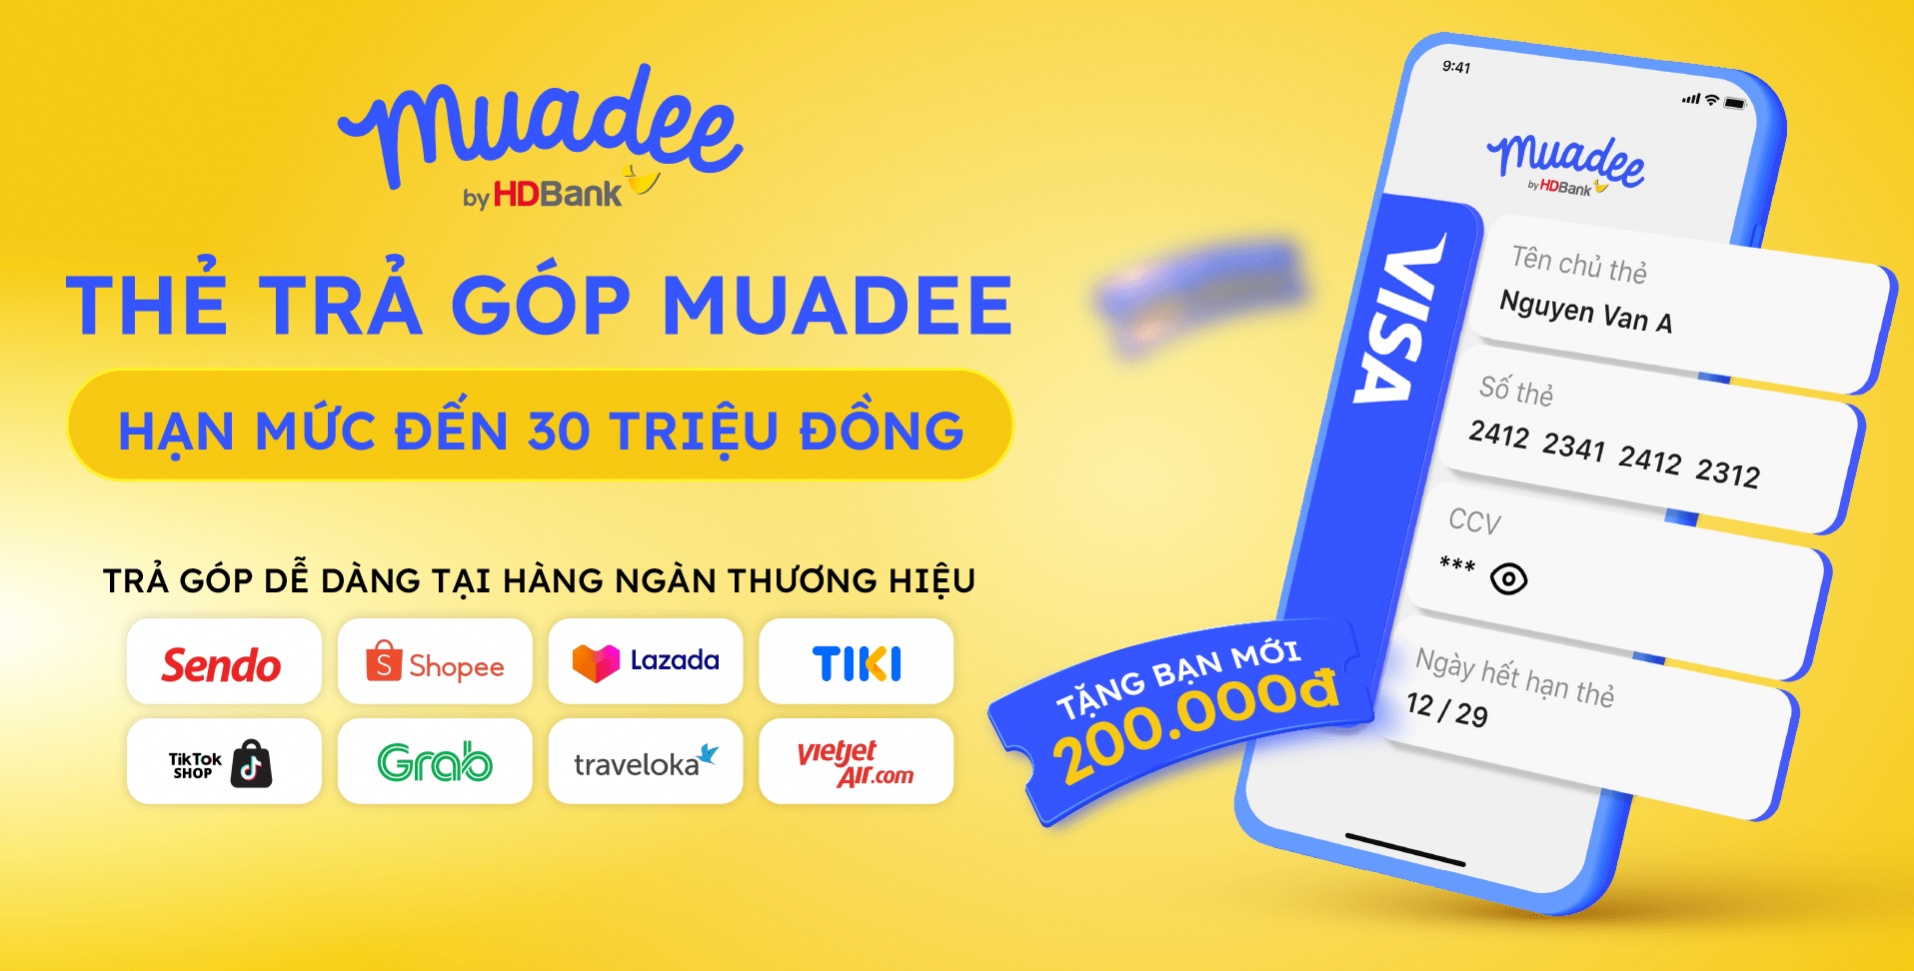 Thanh toán bằng Muadee by HDBank: 50.000 đồng cũng được trả góp